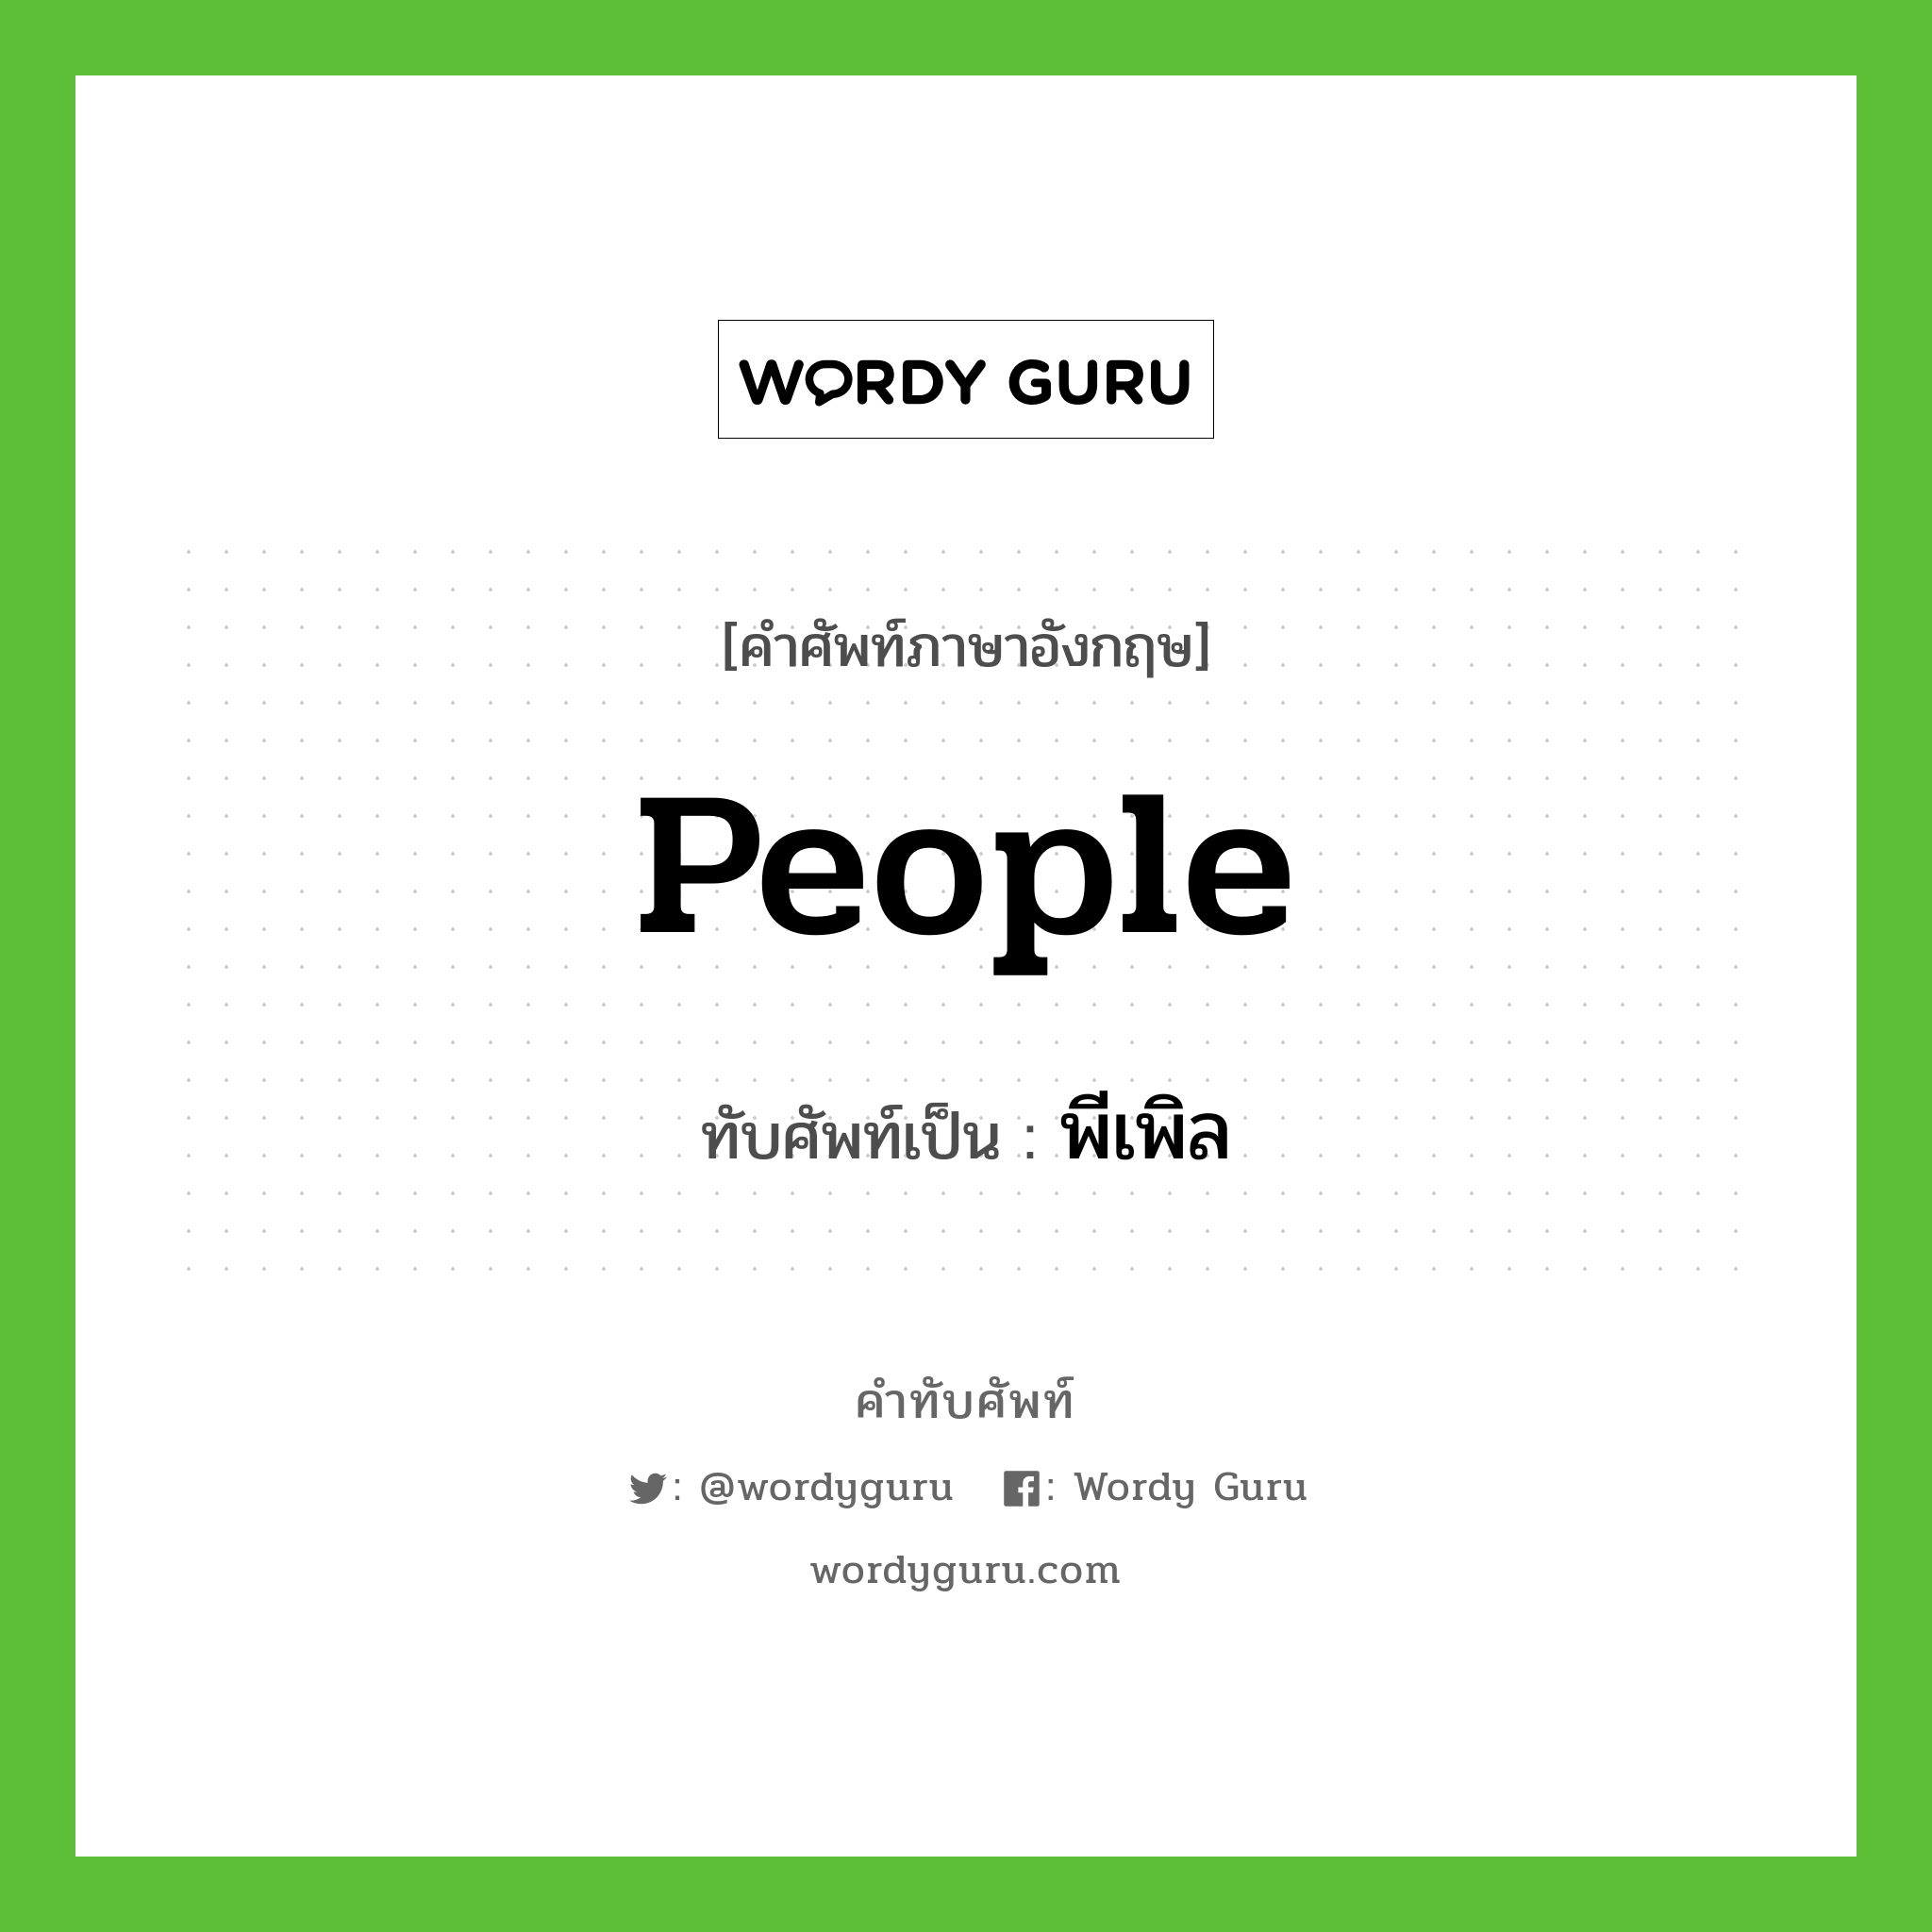 people เขียนเป็นคำไทยว่าอะไร?, คำศัพท์ภาษาอังกฤษ people ทับศัพท์เป็น พีเพิล